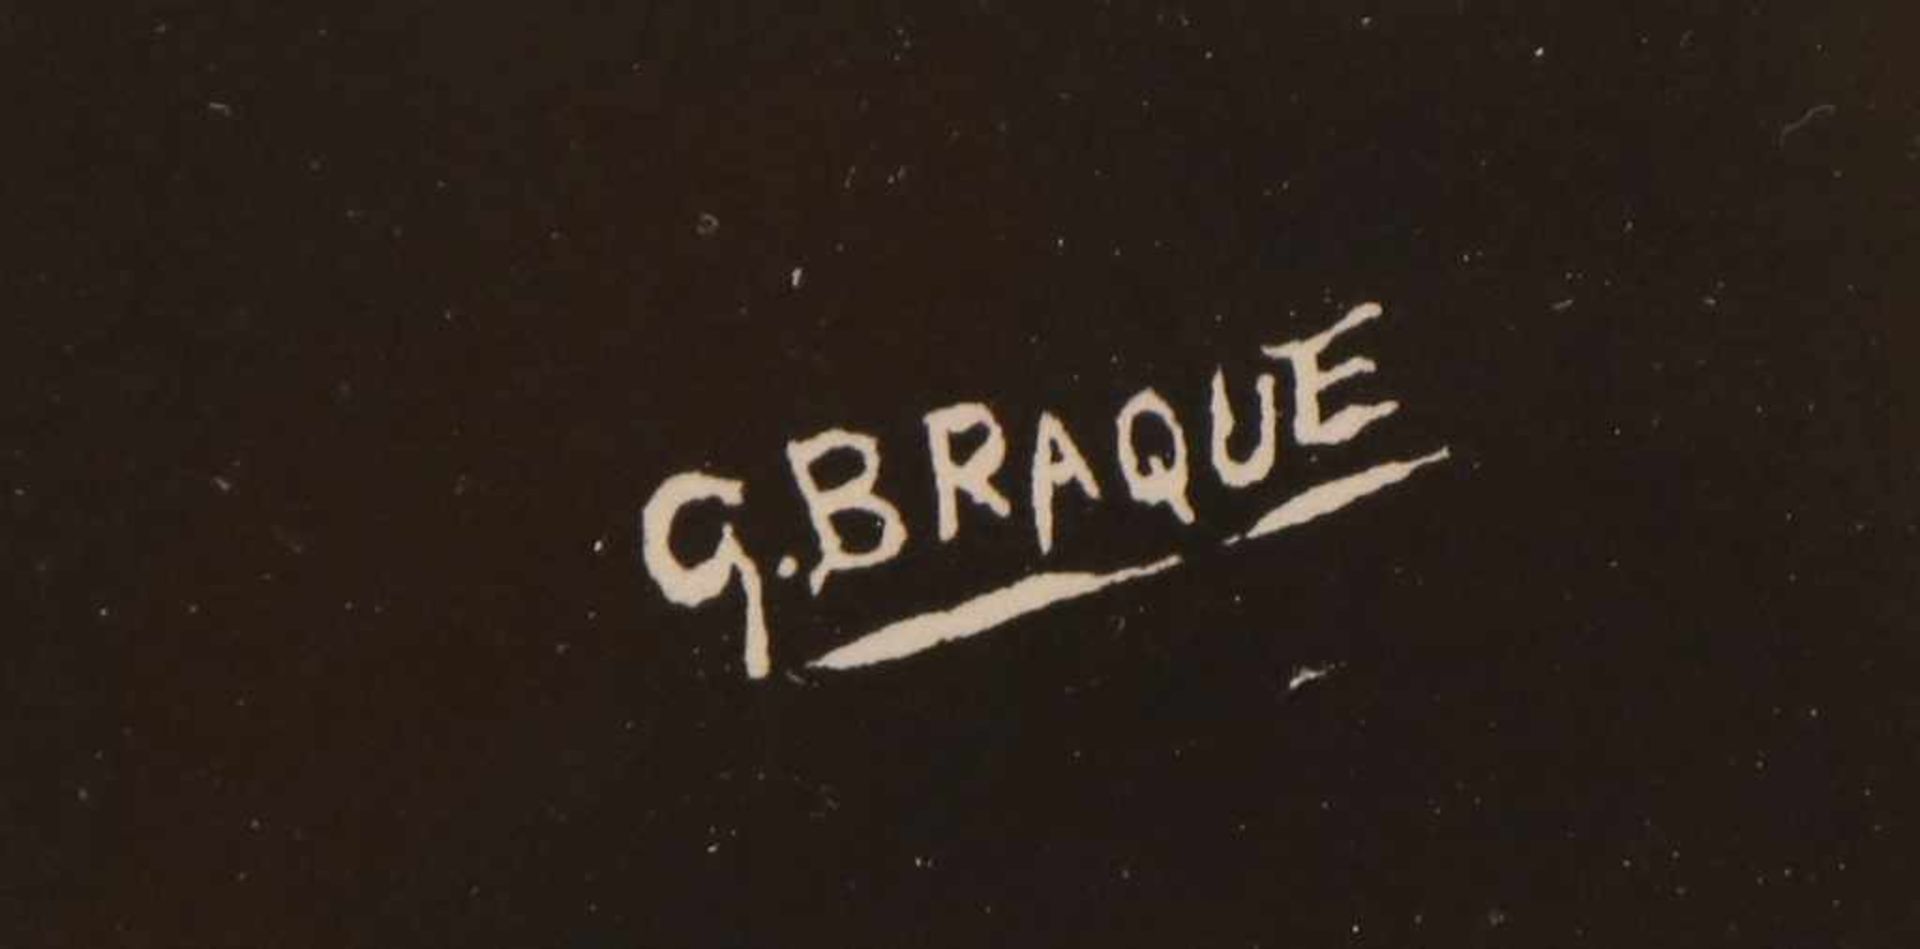 GEORGES BRAQUE (1882 Argenteuil-1963 Paris) Lithographie, ¨Herkules¨, unten rechts - Image 2 of 2